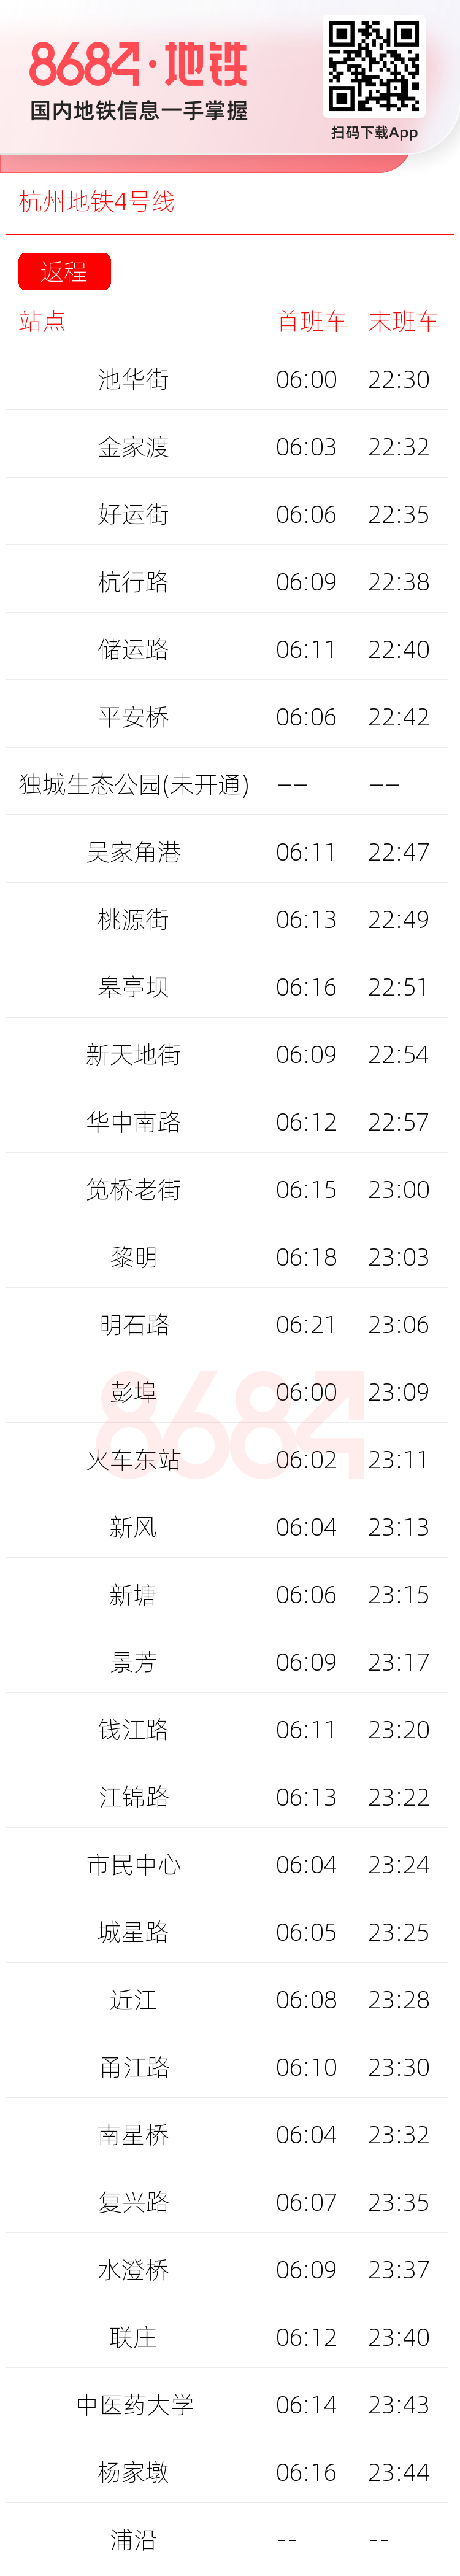 杭州地铁4号线运营时间表